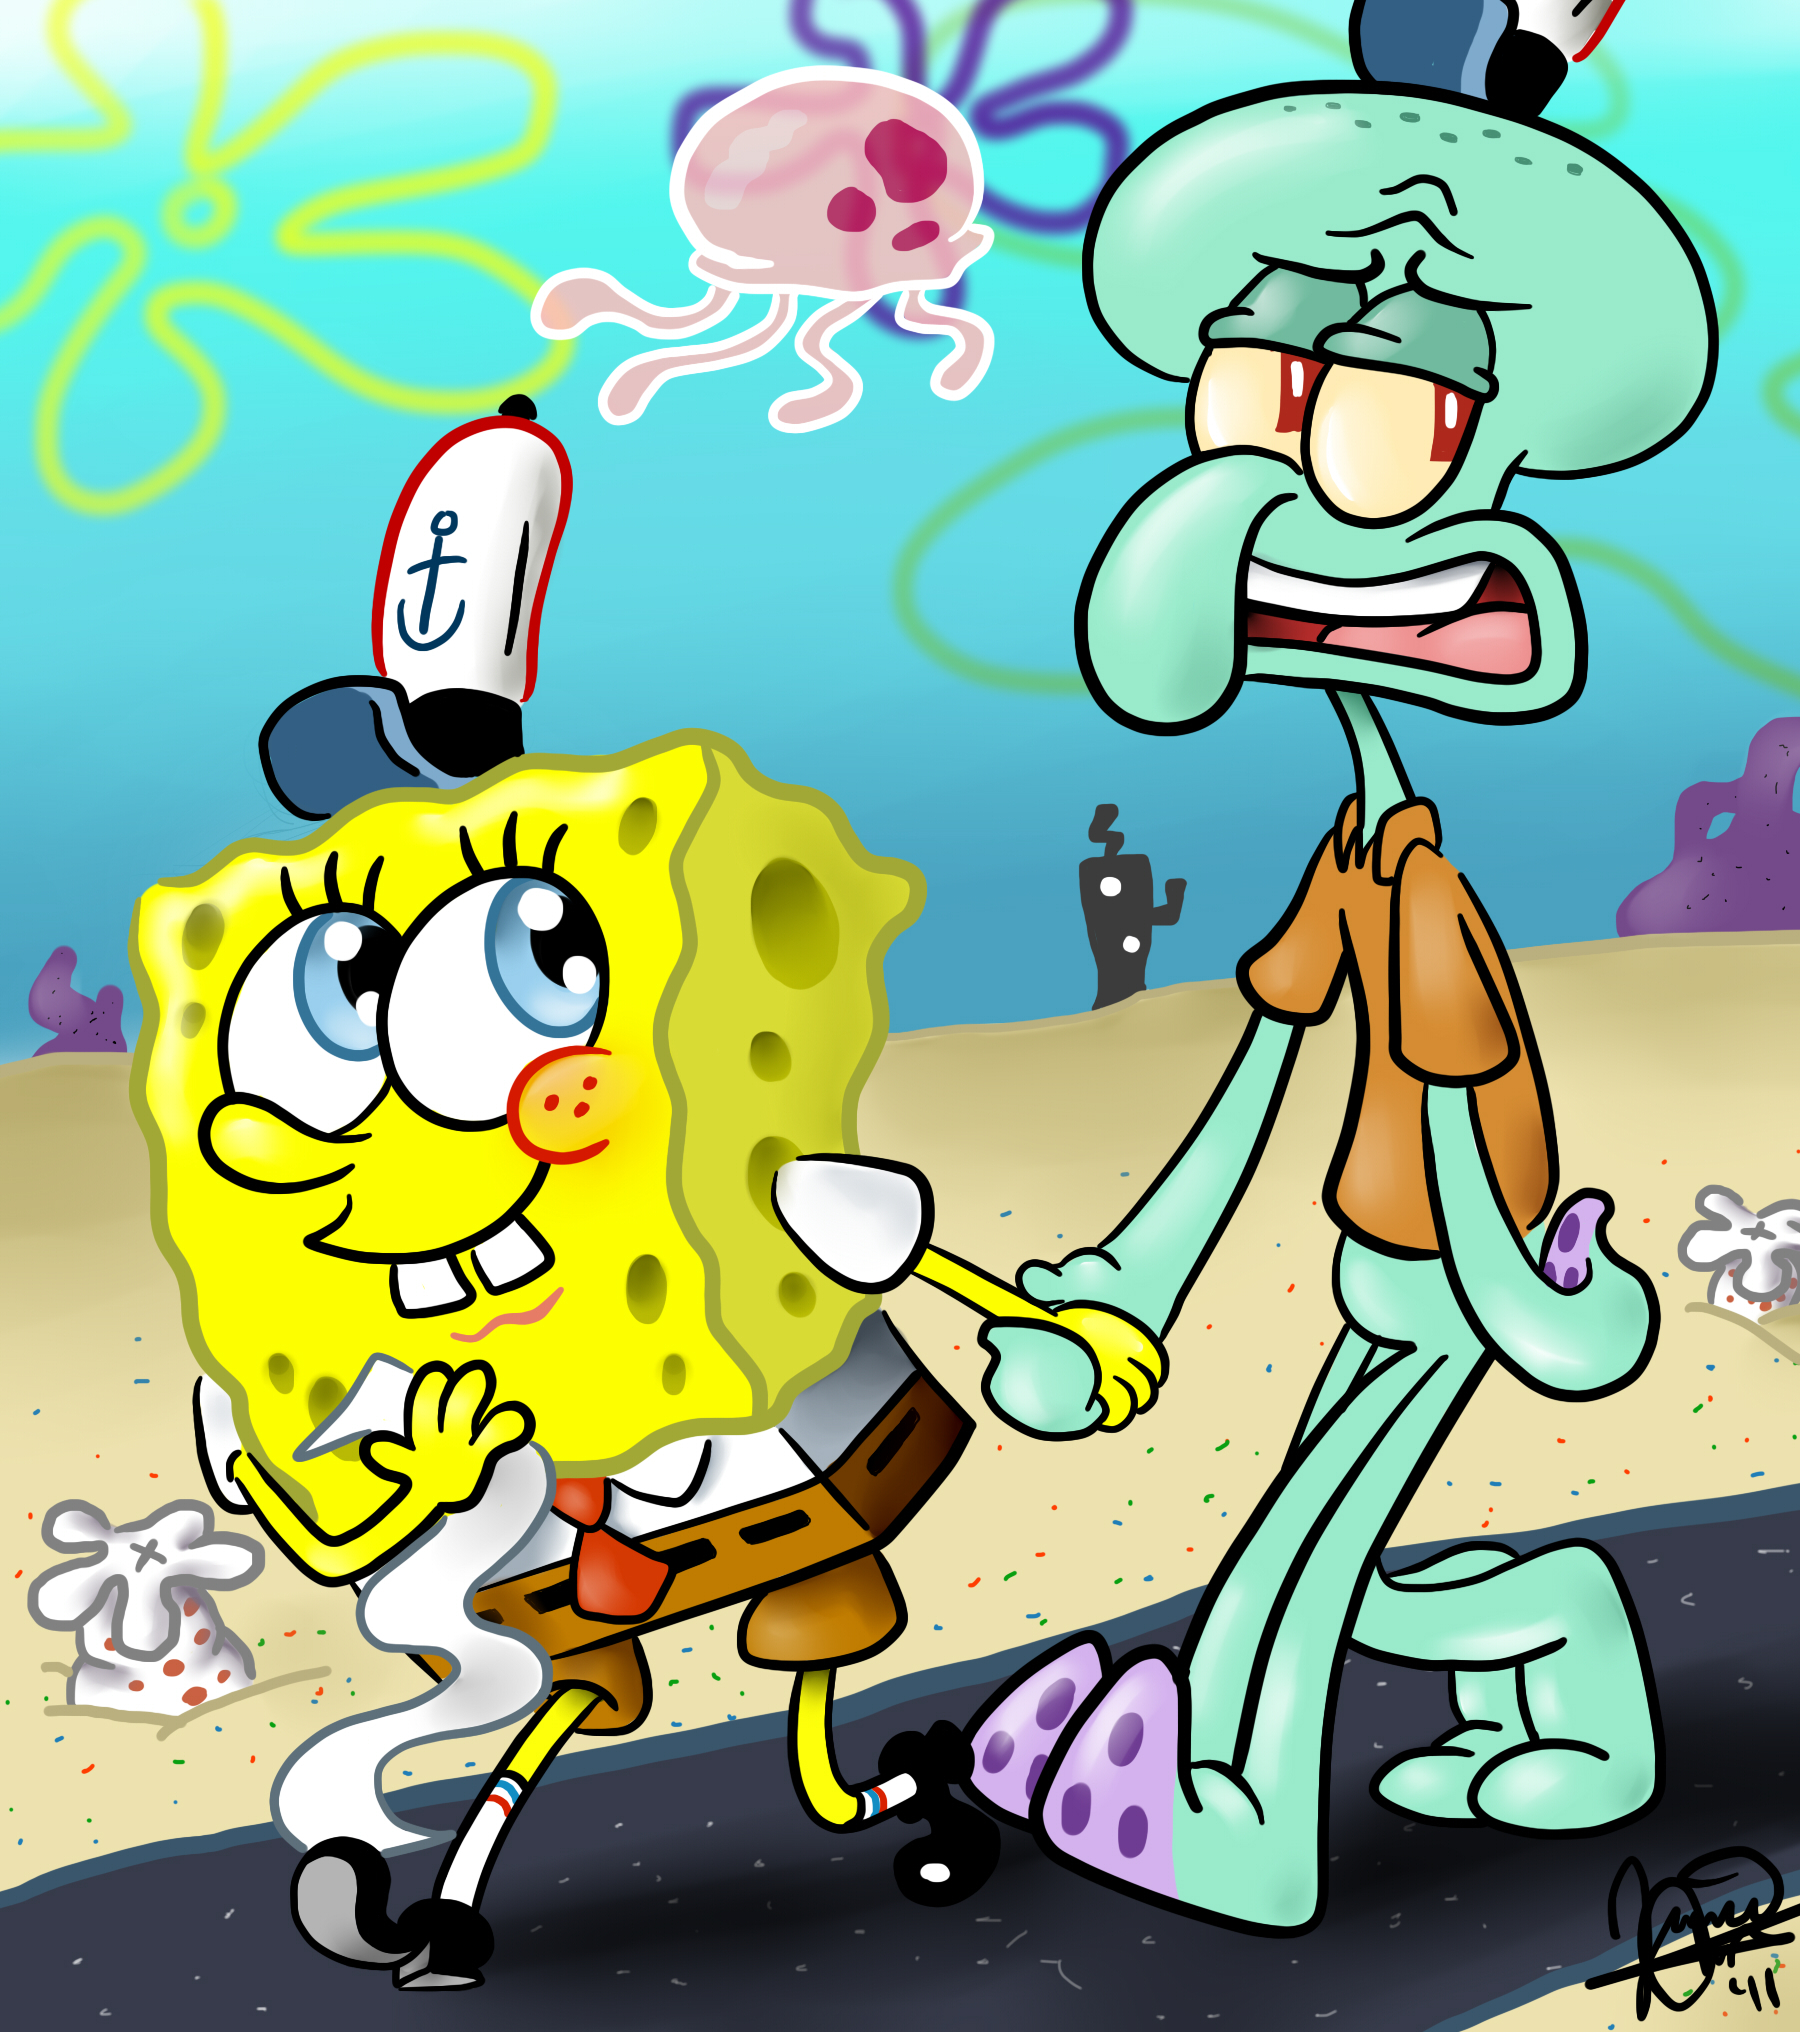 squidward killing spongebob